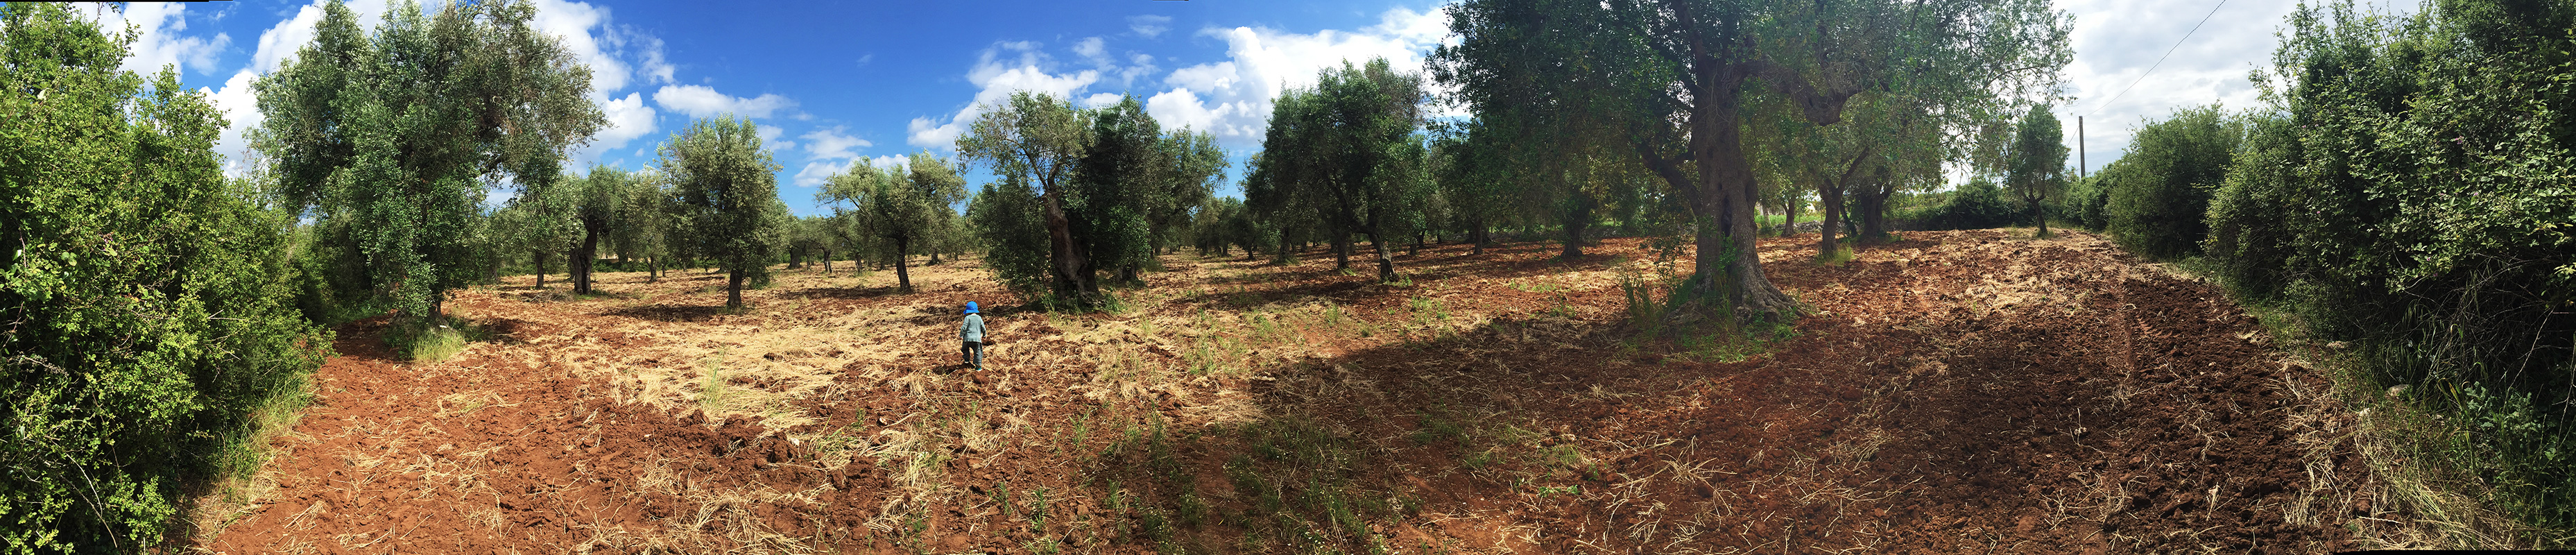 puglia-olivefields